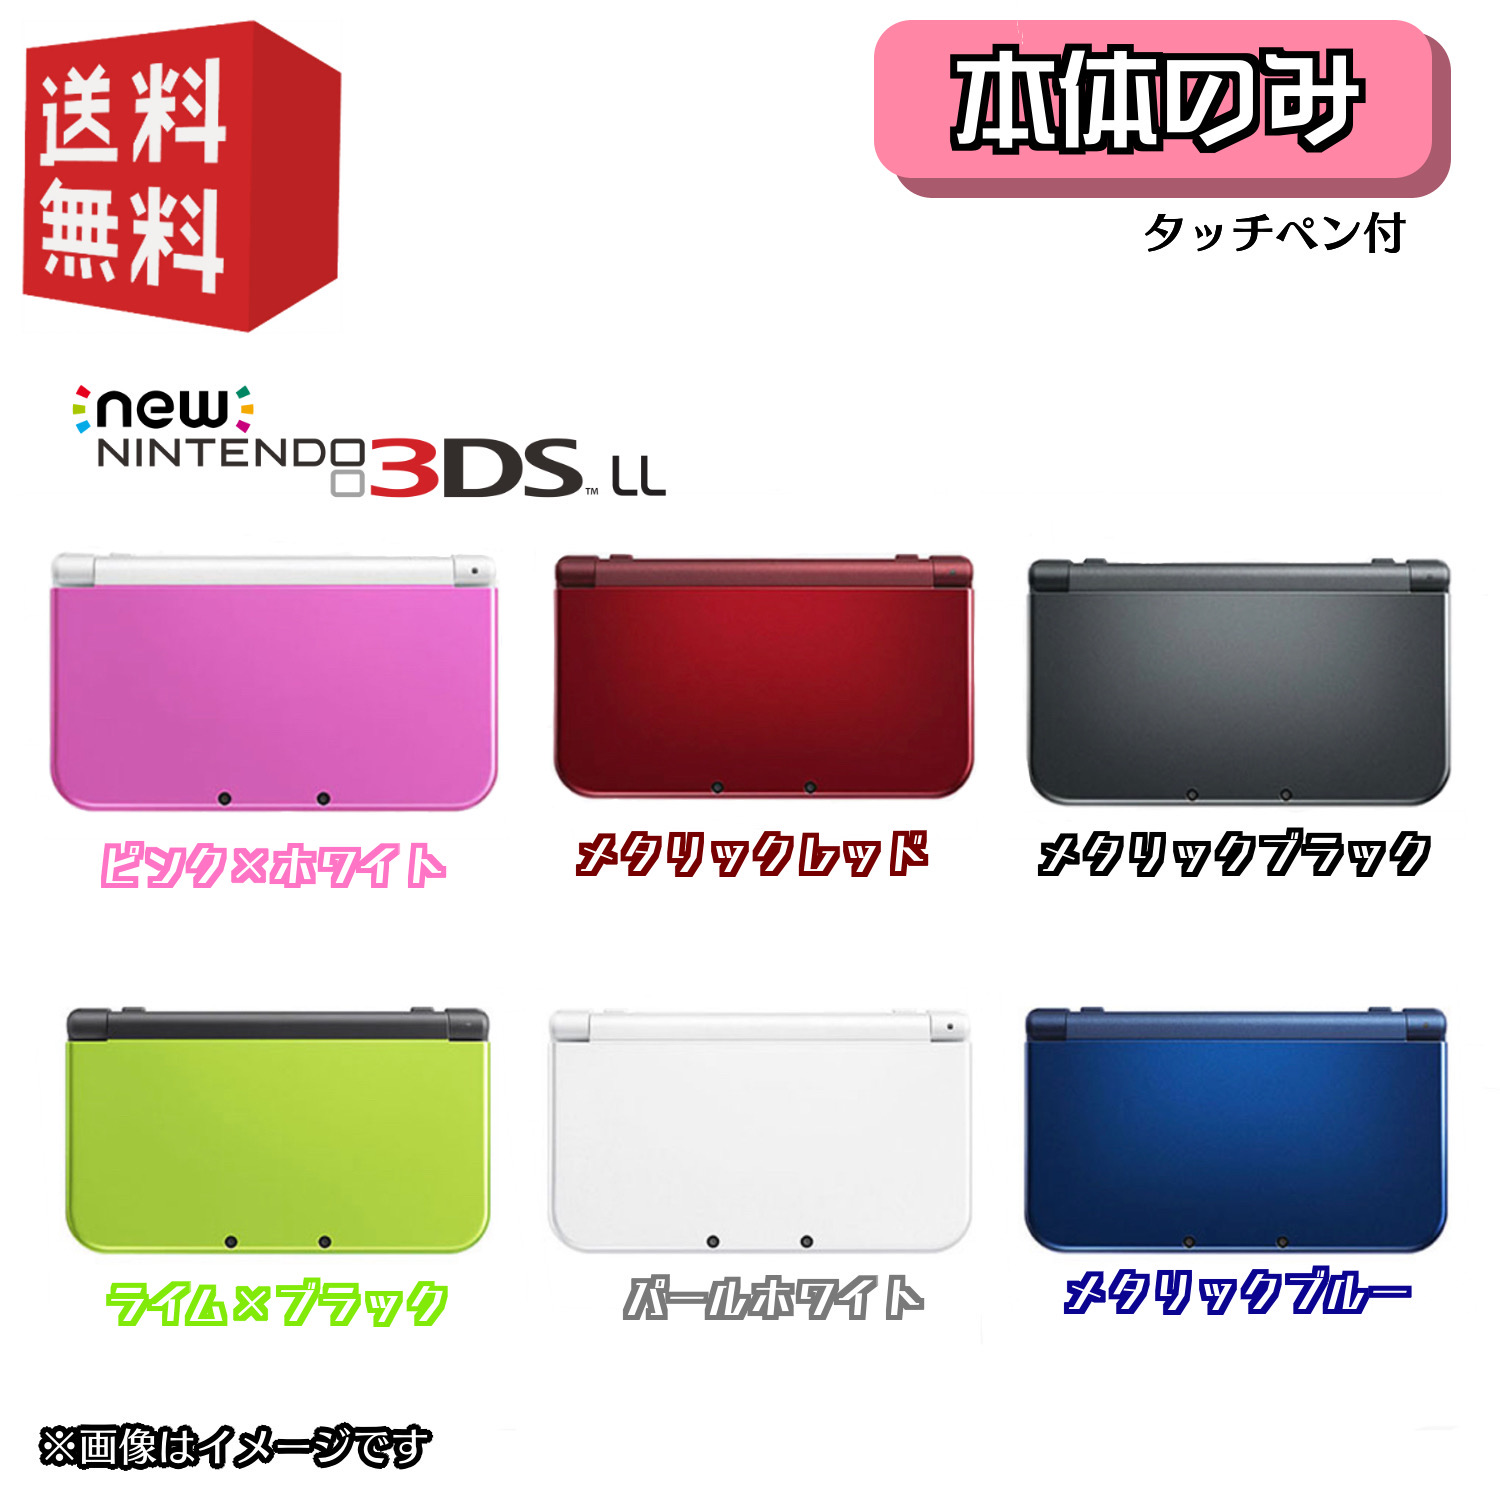 中古】New Nintendo 3DS LL 本体 選べるカラー6色 【本体のみ